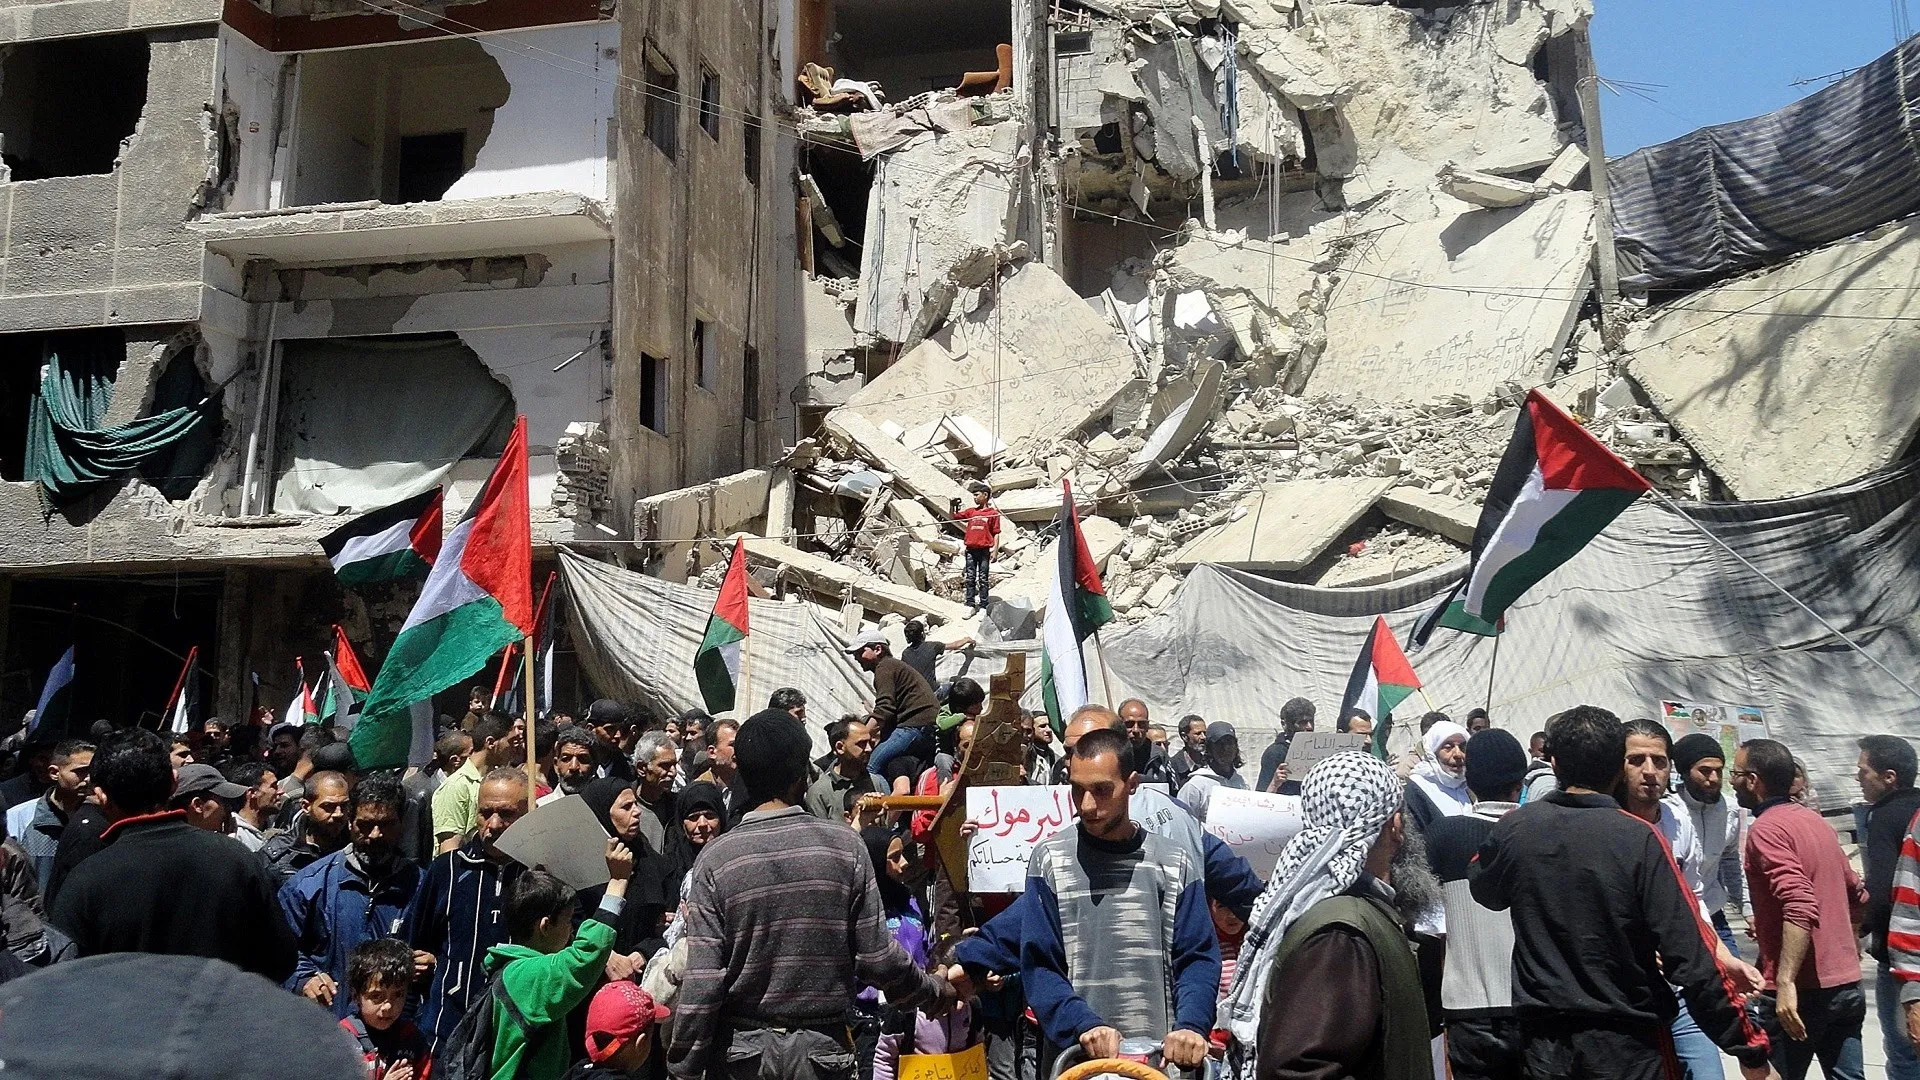 نشطاء فلسطينيون ينتقدون سياسة محافظة دمشق ويطالبون بعودة اللجنة المحلية لإدارة مخيم اليرموك